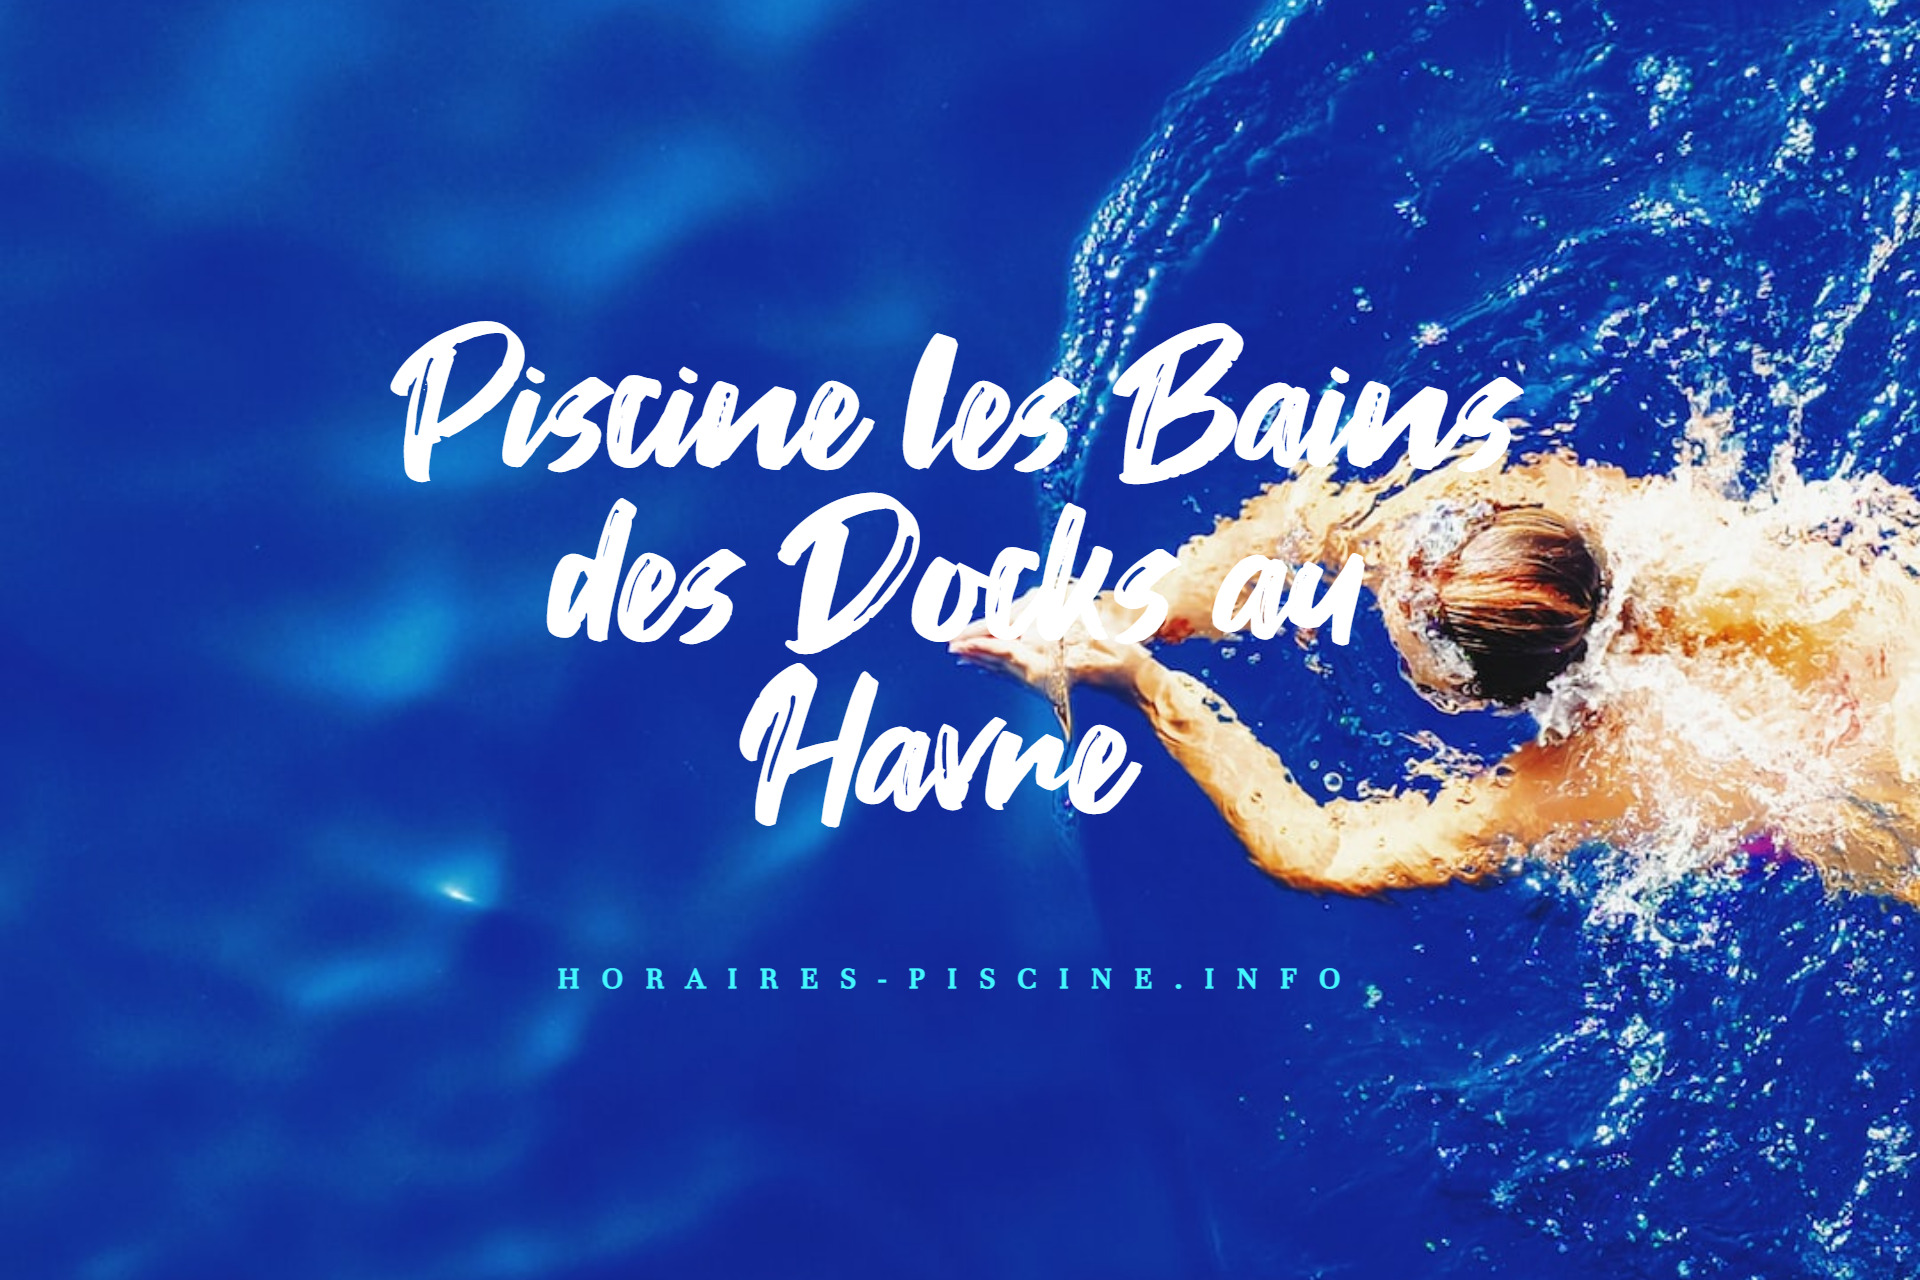 horaires Piscine les Bains des Docks au Havre